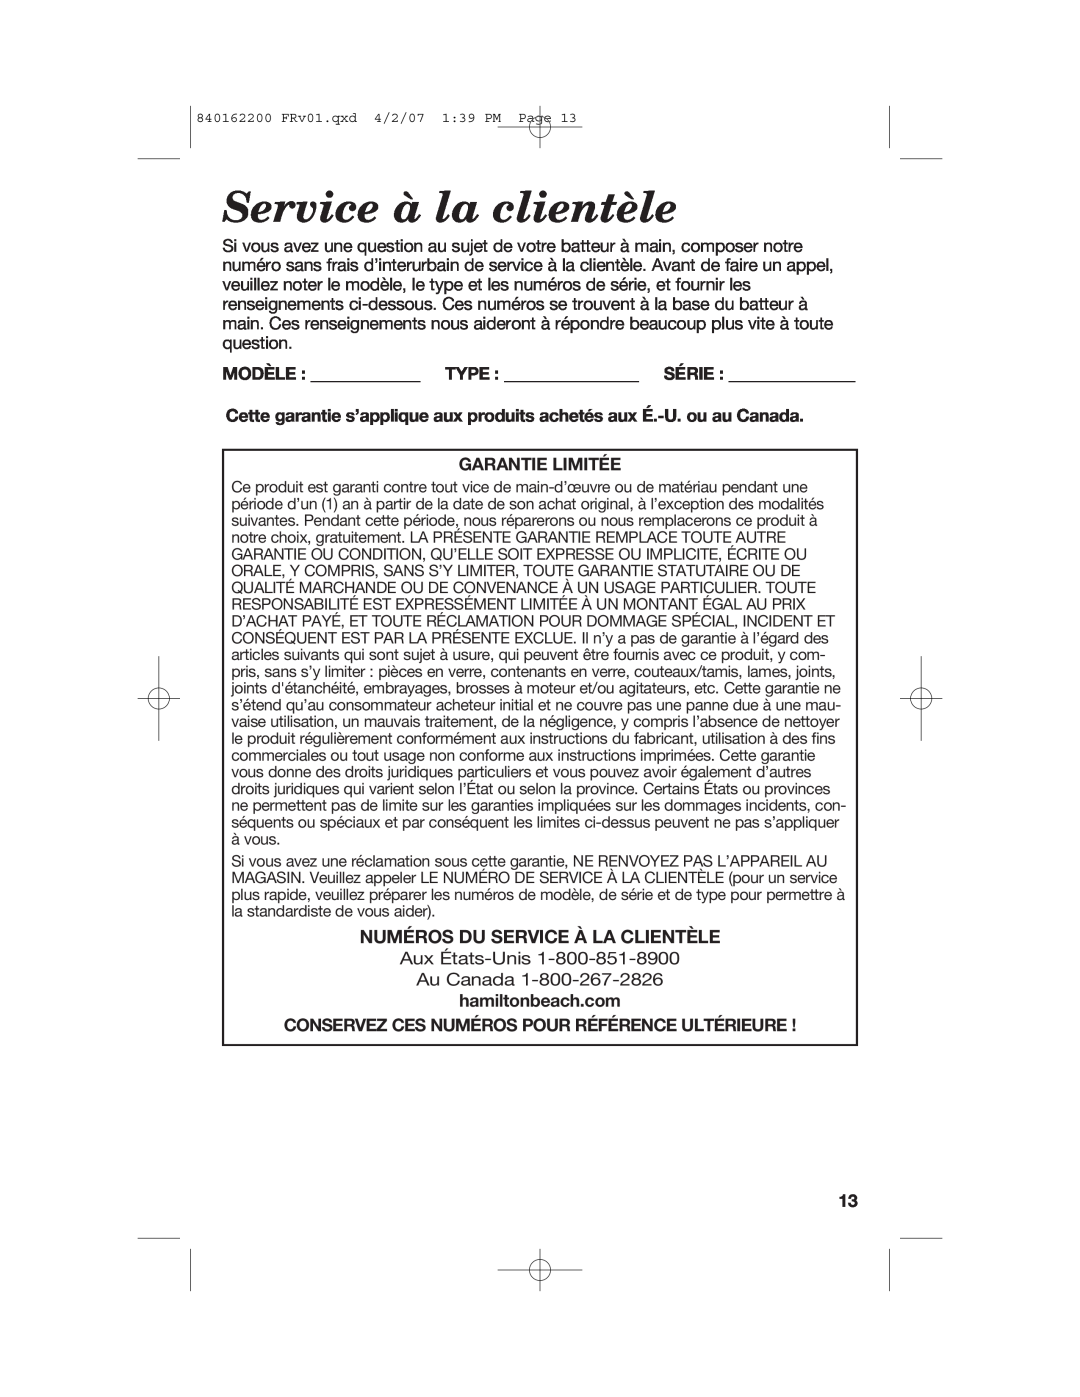 Hamilton Beach 62695NC Service à la clientèle, Numéros Du Service À La Clientèle, Modèle Type Série, Garantie Limitée 